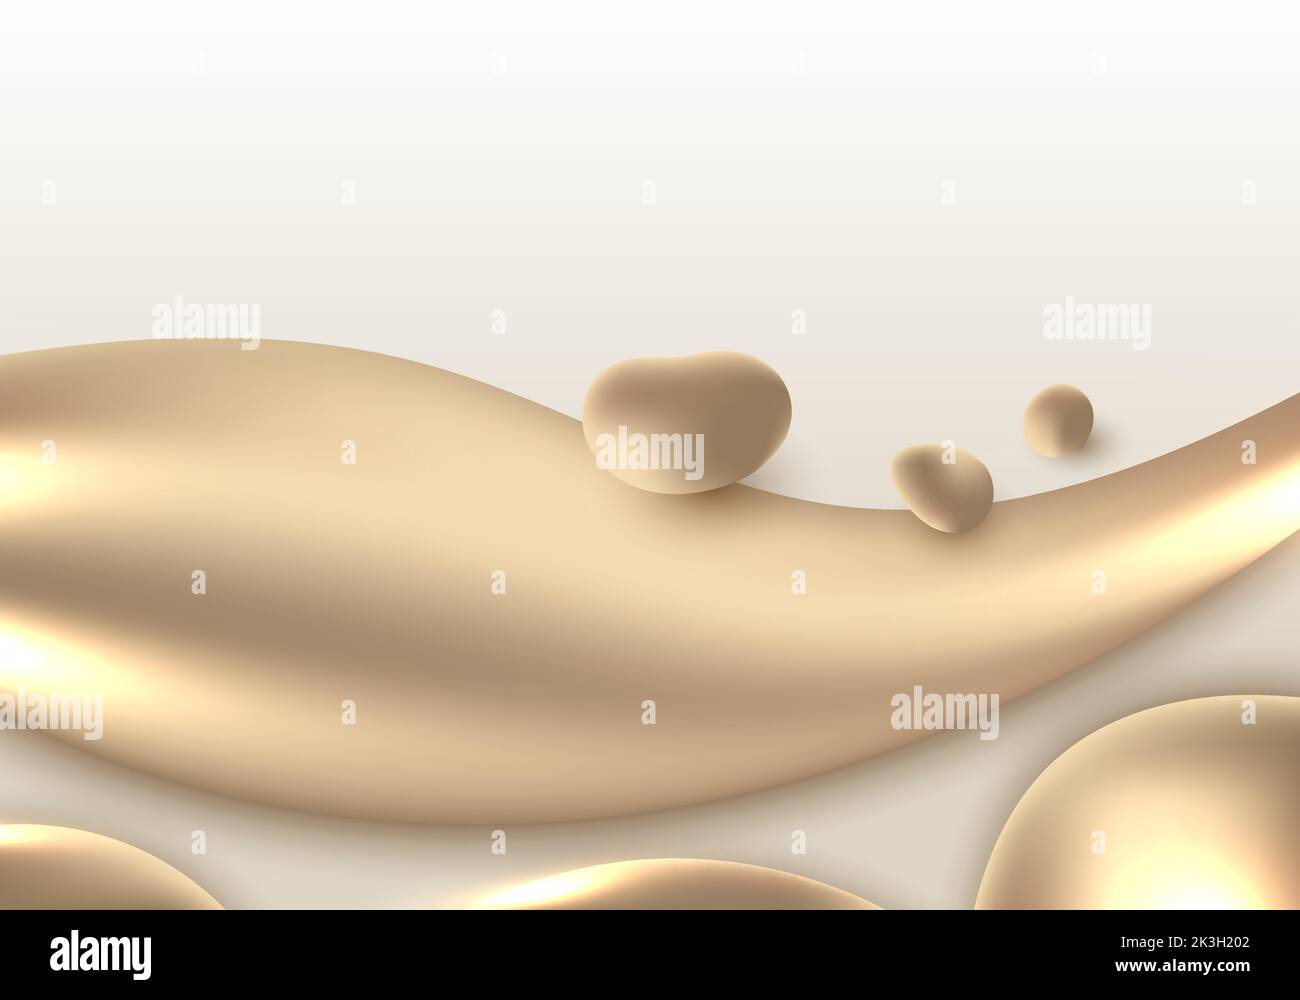 Résumé 3D fluide doré ou liquide fluide circulant sur fond blanc style de luxe. Illustration vectorielle Illustration de Vecteur